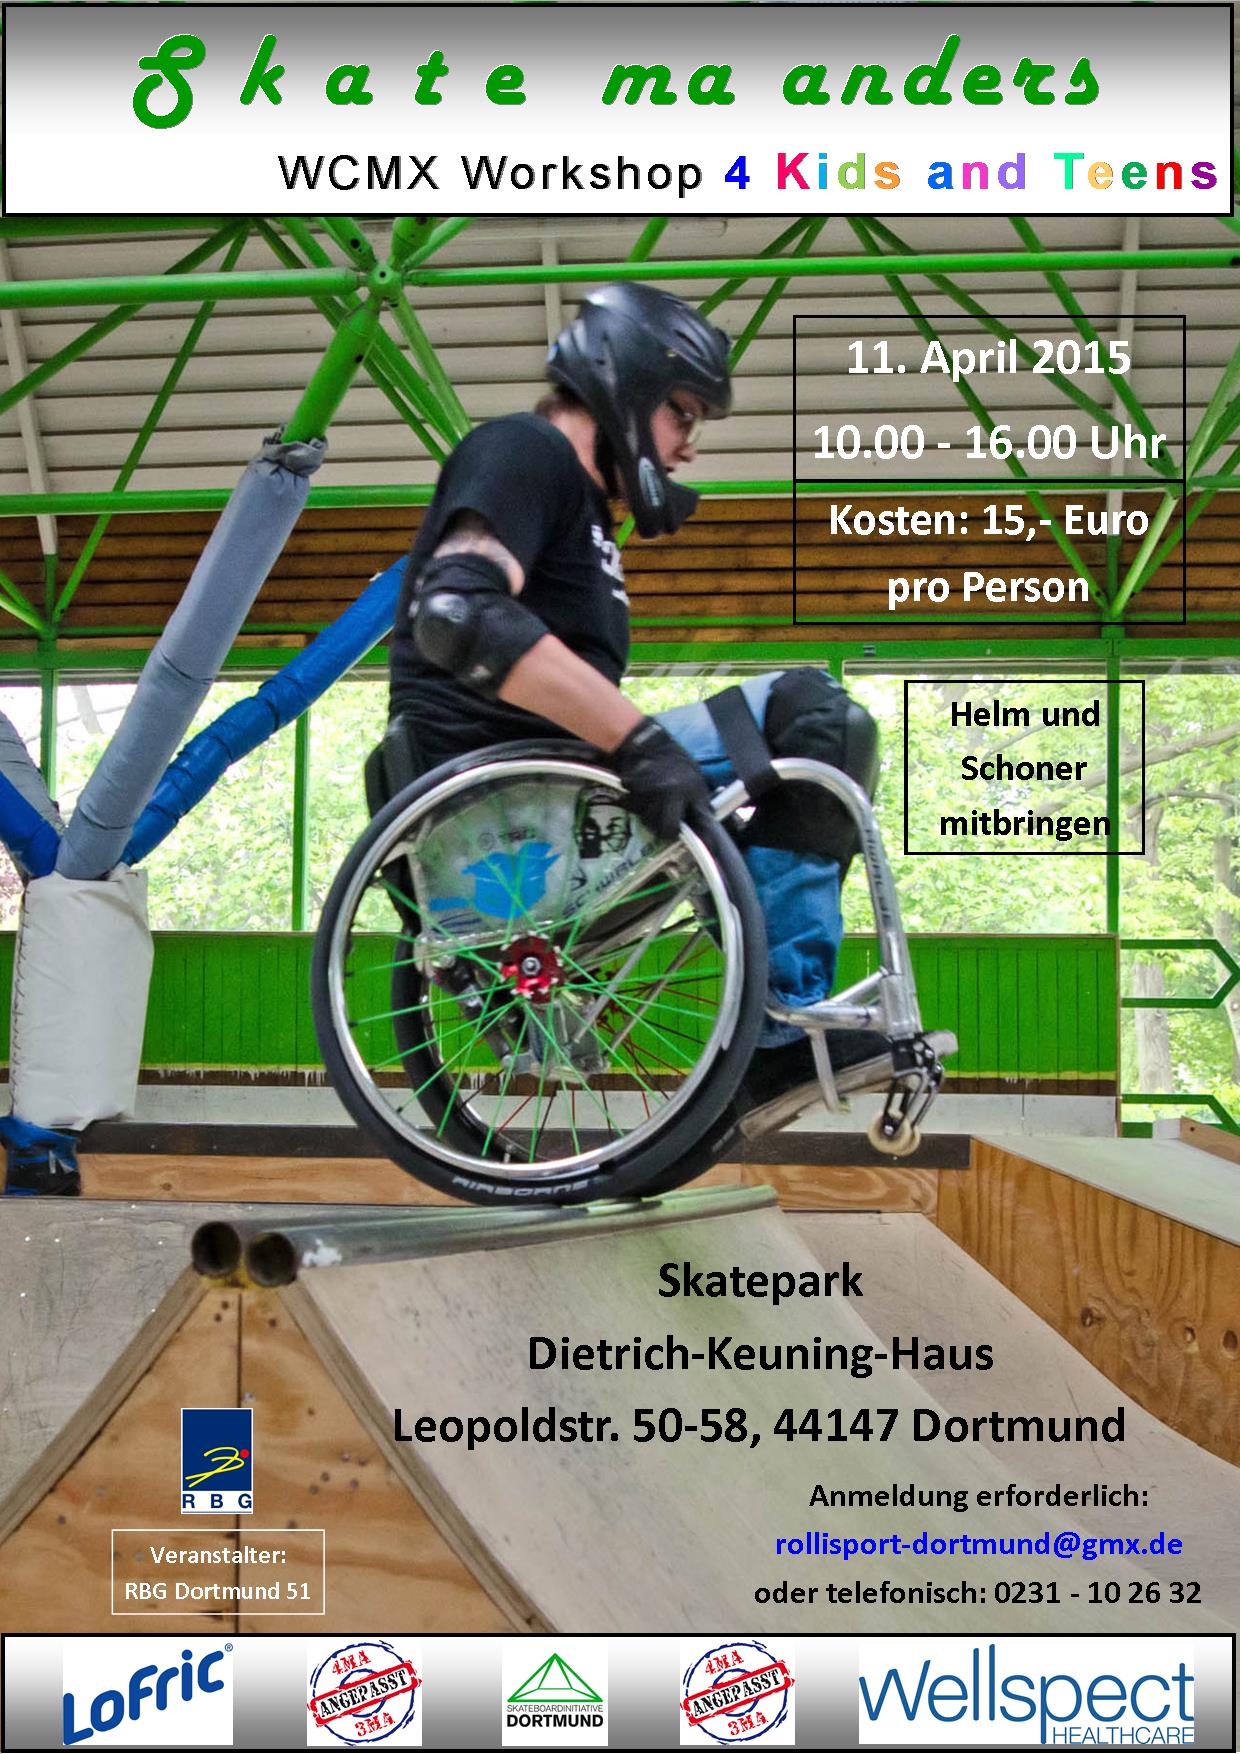 11. April 2015 - Skate ma anders in Dortmund